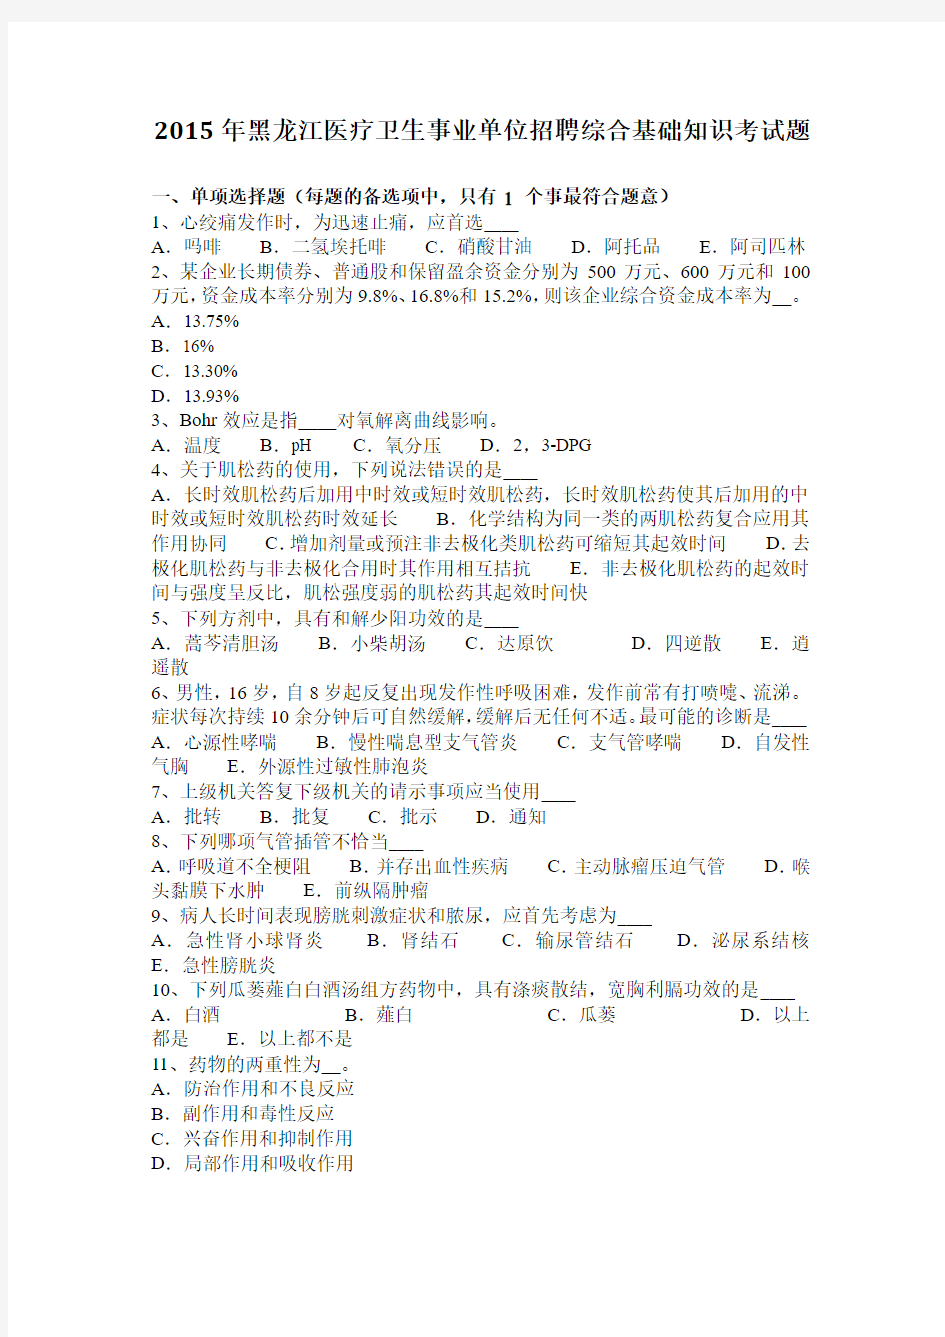 2015年黑龙江医疗卫生事业单位招聘综合基础知识考试题